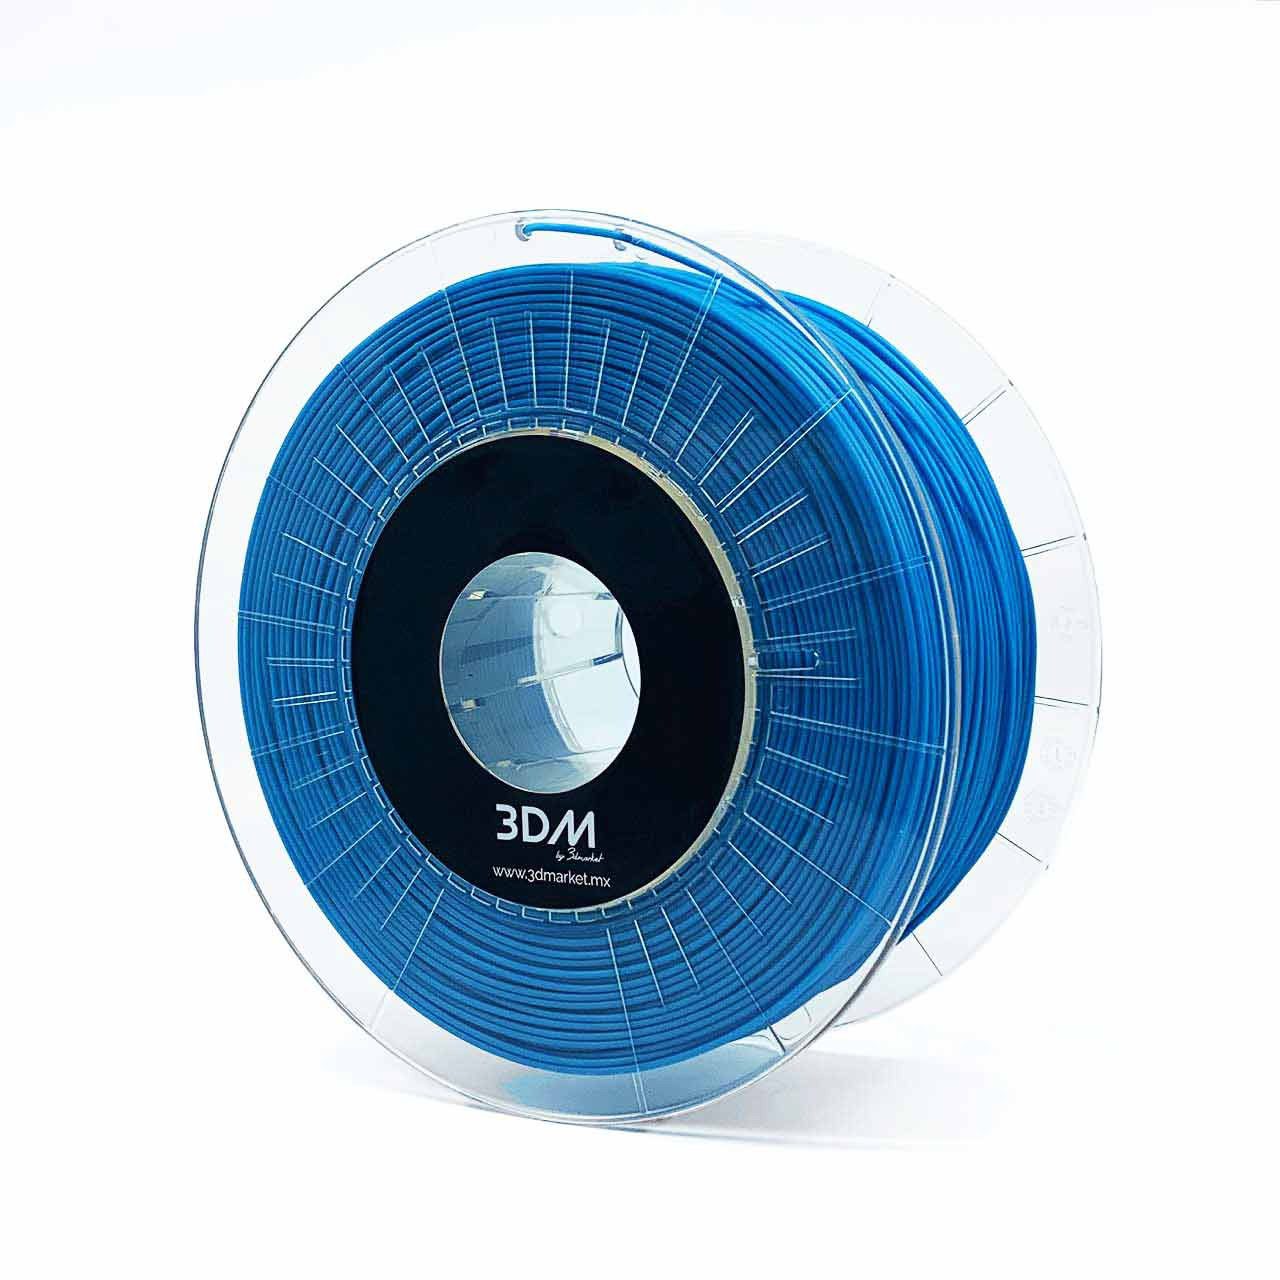 Filamento 3d PLA azul 1.75mm para impresoras 3d